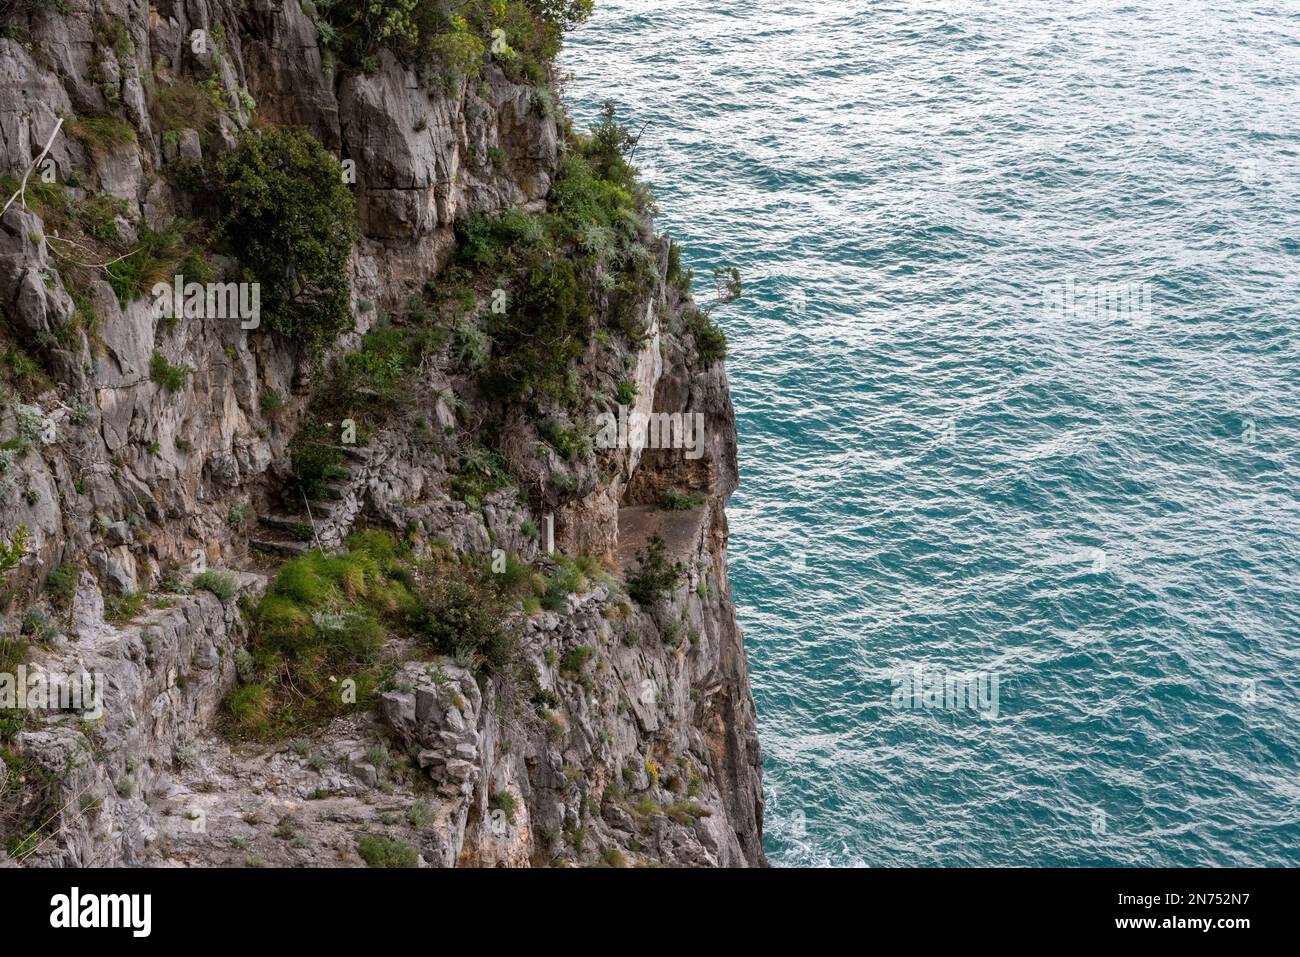 L'antico pericoloso passaggio costiero alle scogliere della costiera amalfitana, nel sud dell'Italia Foto Stock